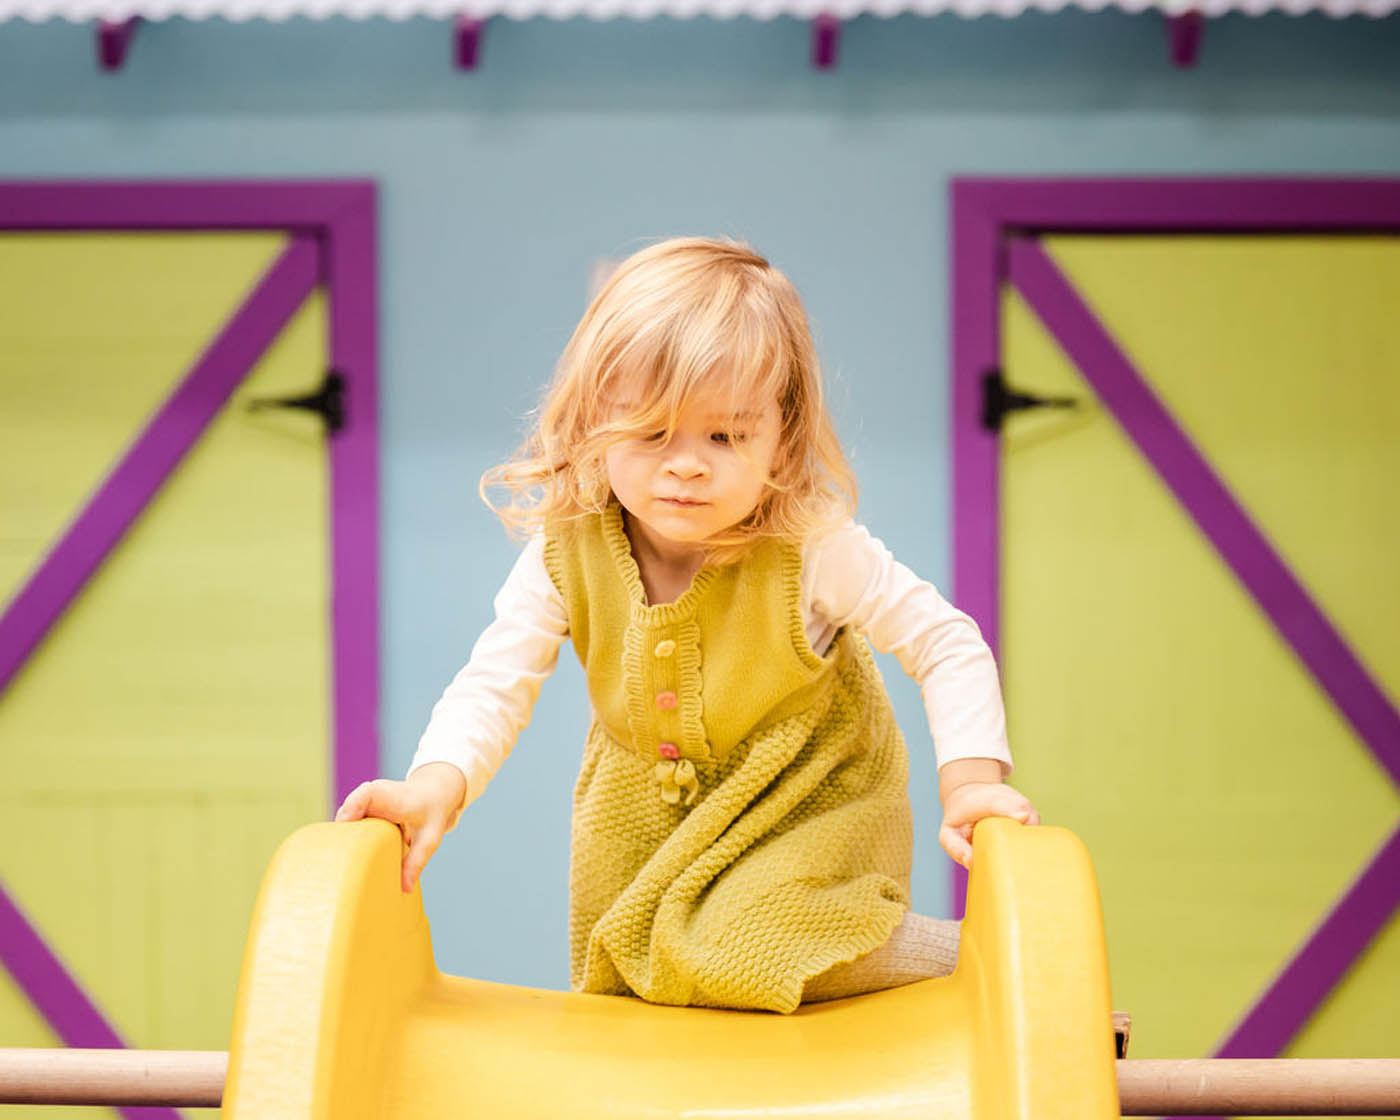 A girl climbing up a yellow slide enjoying open play in Glen Allen, VA.